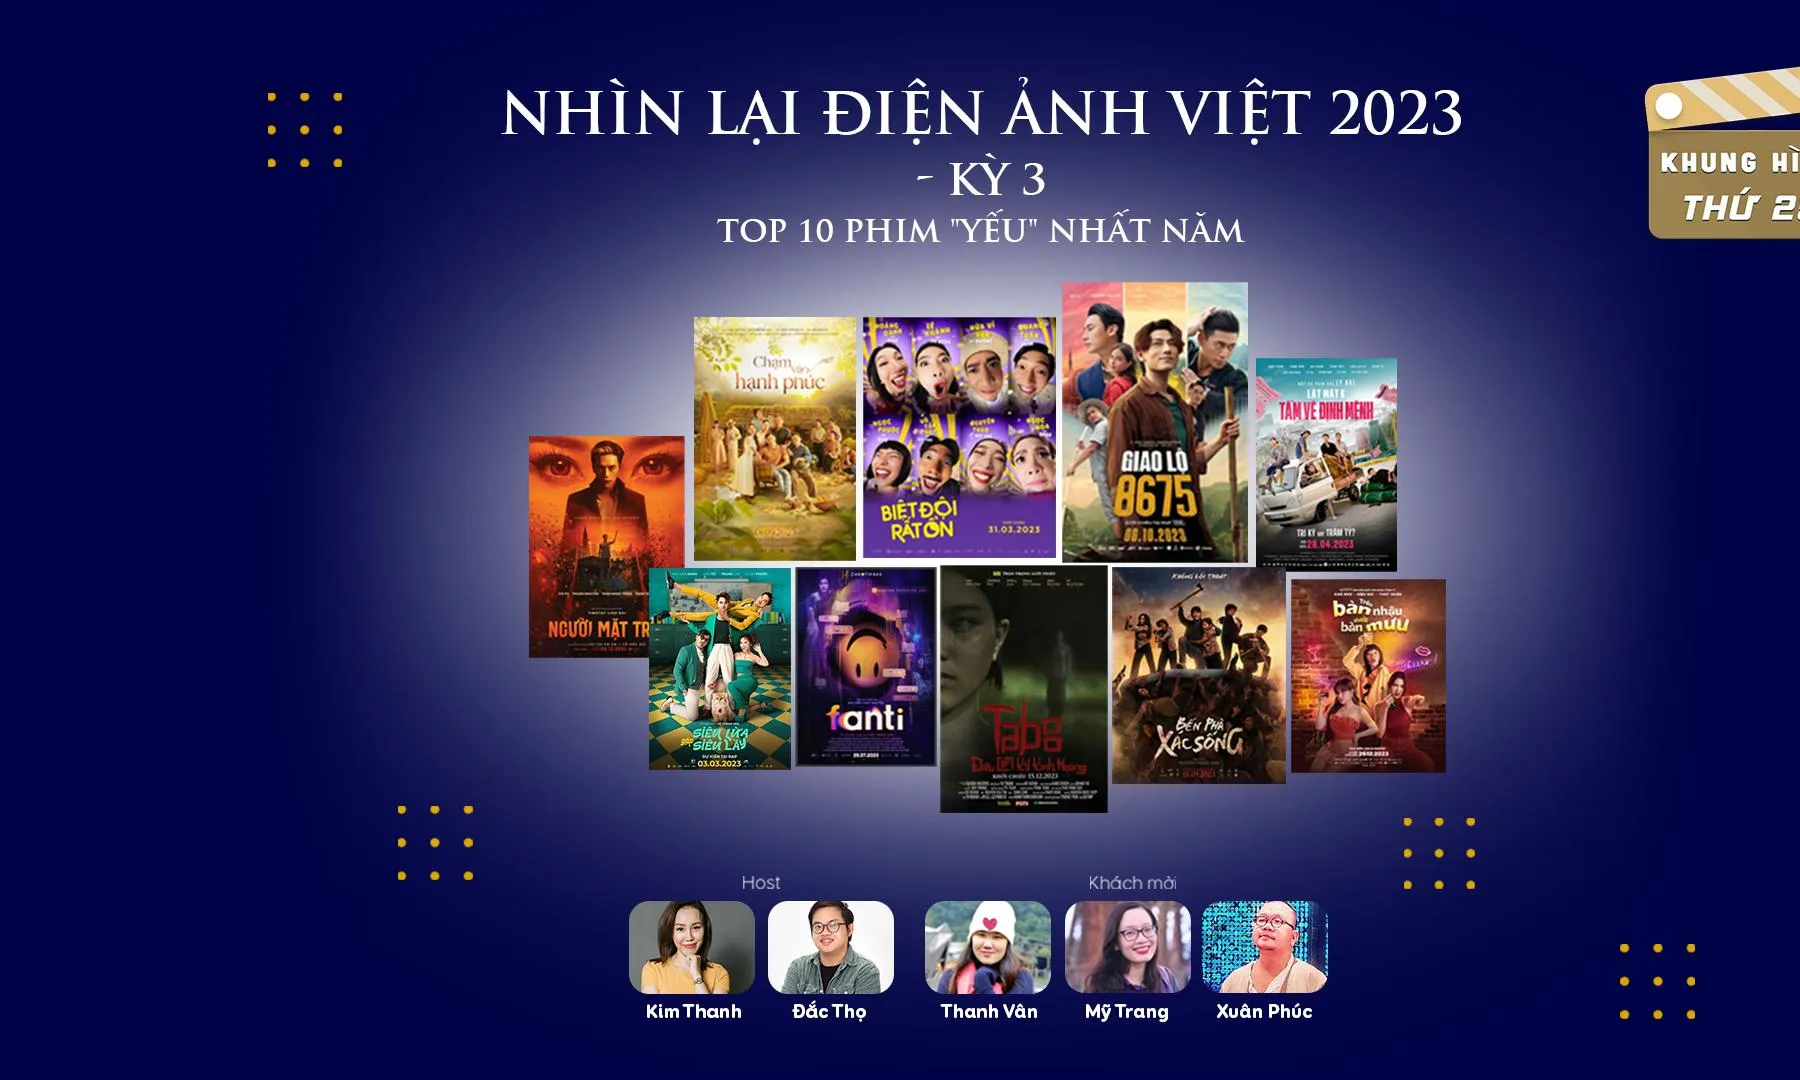 Nhìn lại điện ảnh Việt 2023 - Top 1 đến top 6 phim yếu nhất năm